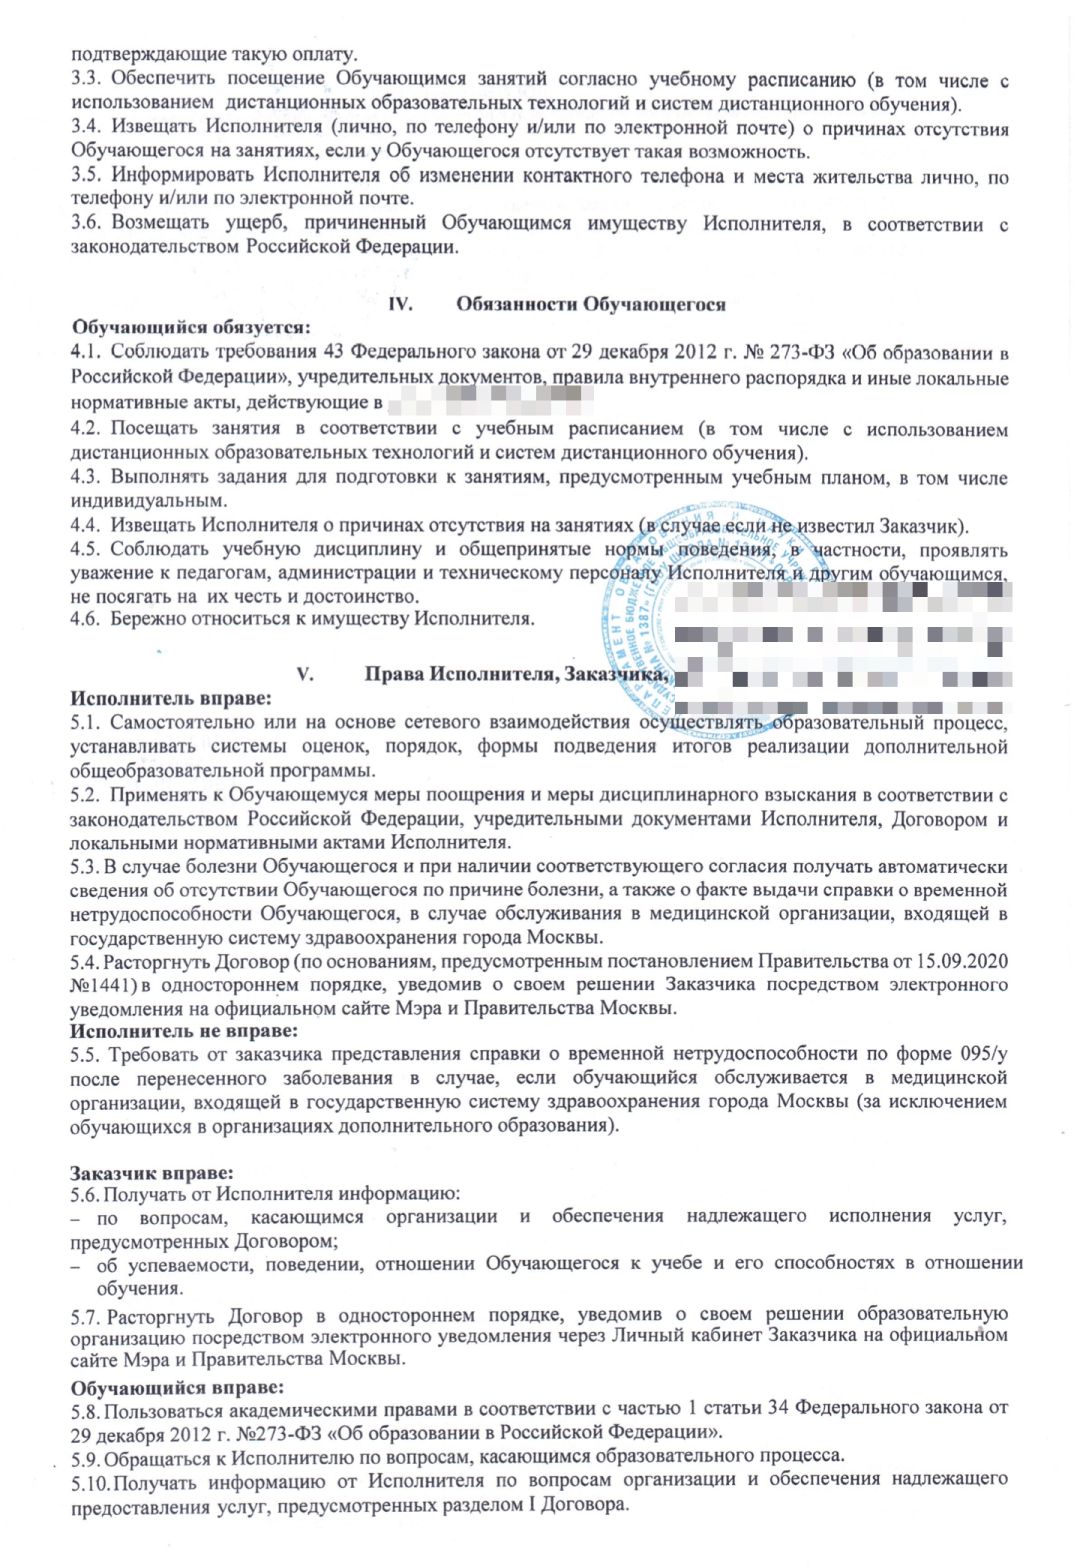 Сертификат на 100 тысяч рублей на третьего ребенка на что можно потратить